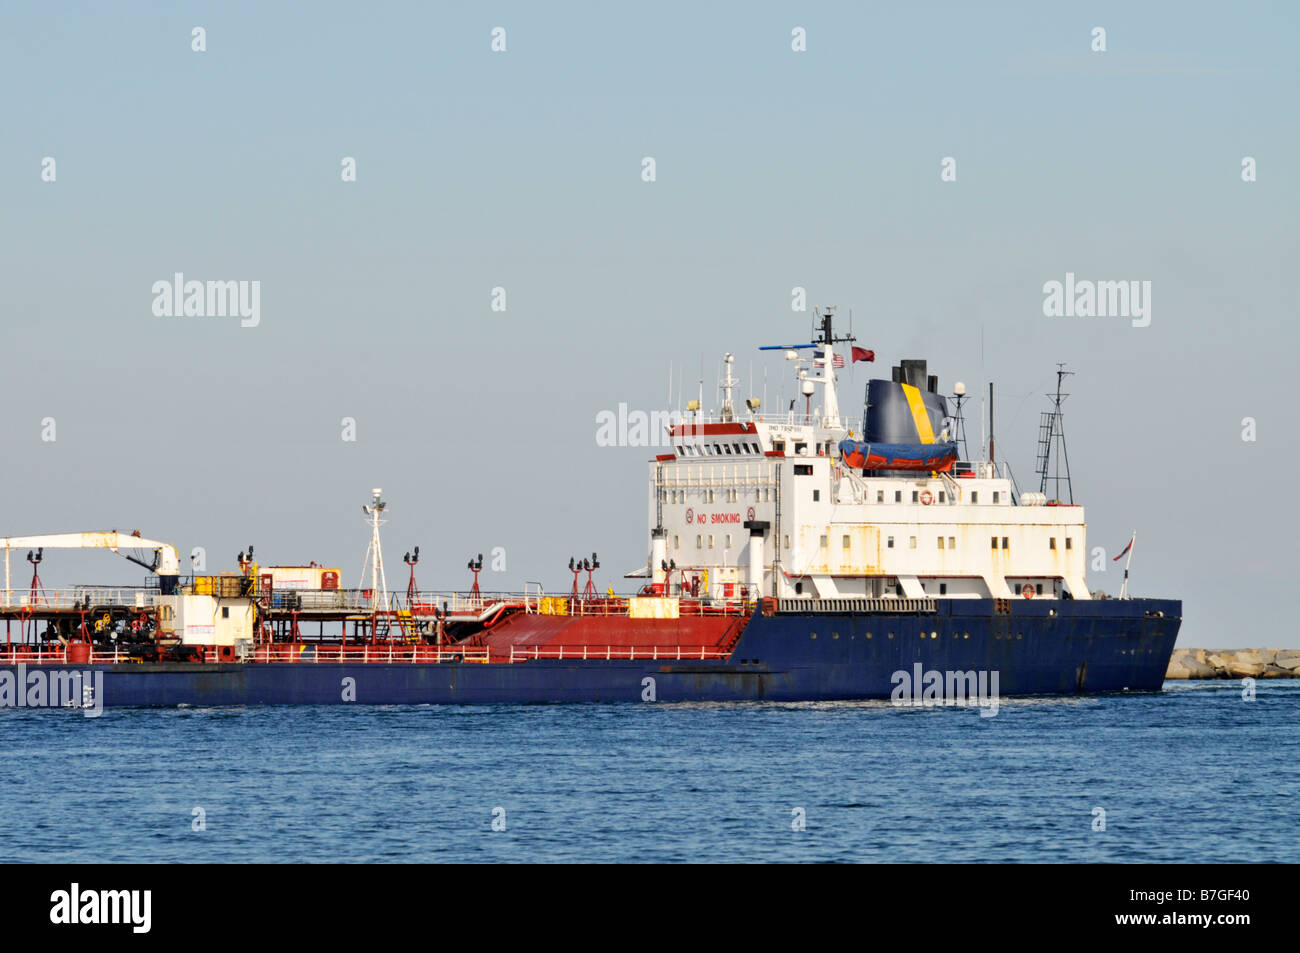 Profil Ansicht eines Öltankers Aufbauten und Deck mit blauen Rumpf auf hoher See Stockfoto